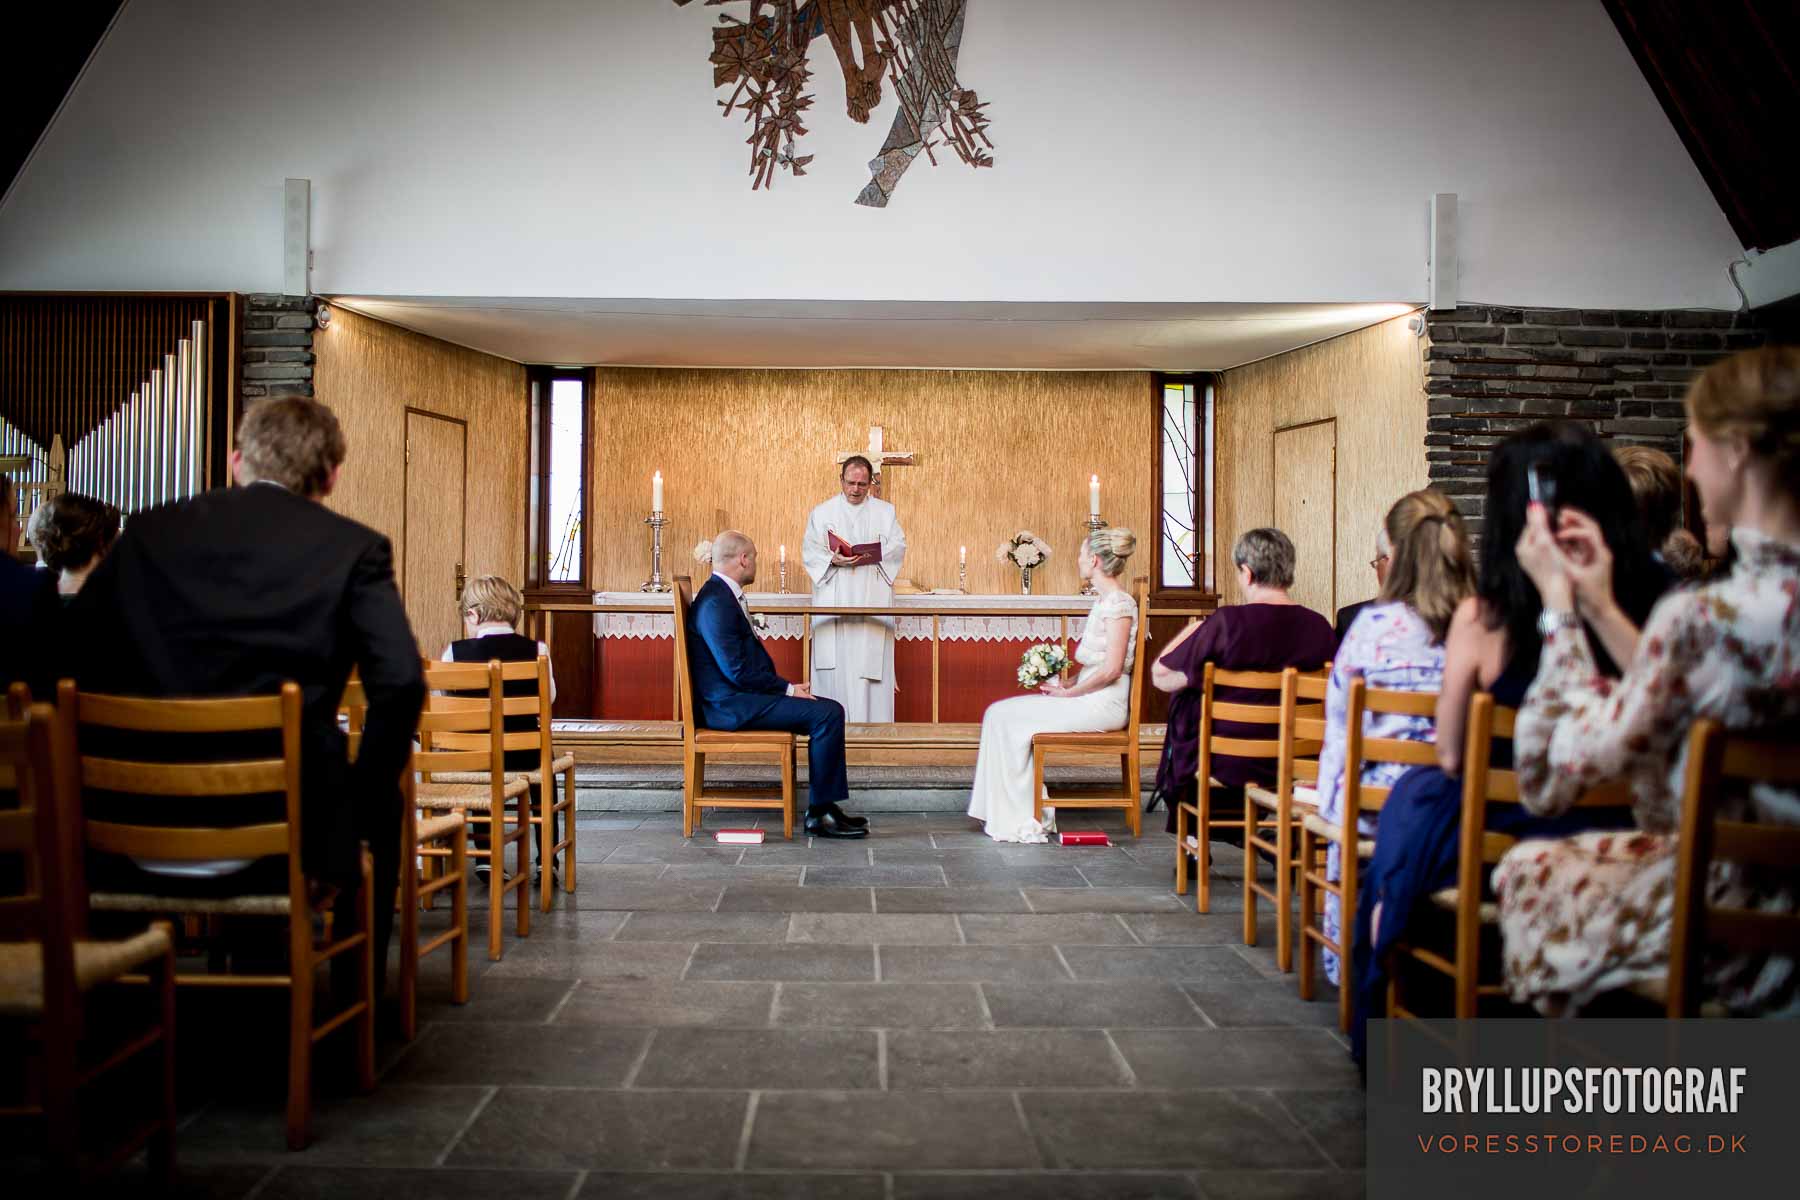 Brylluppet foregik i den norske sømandskirke i København